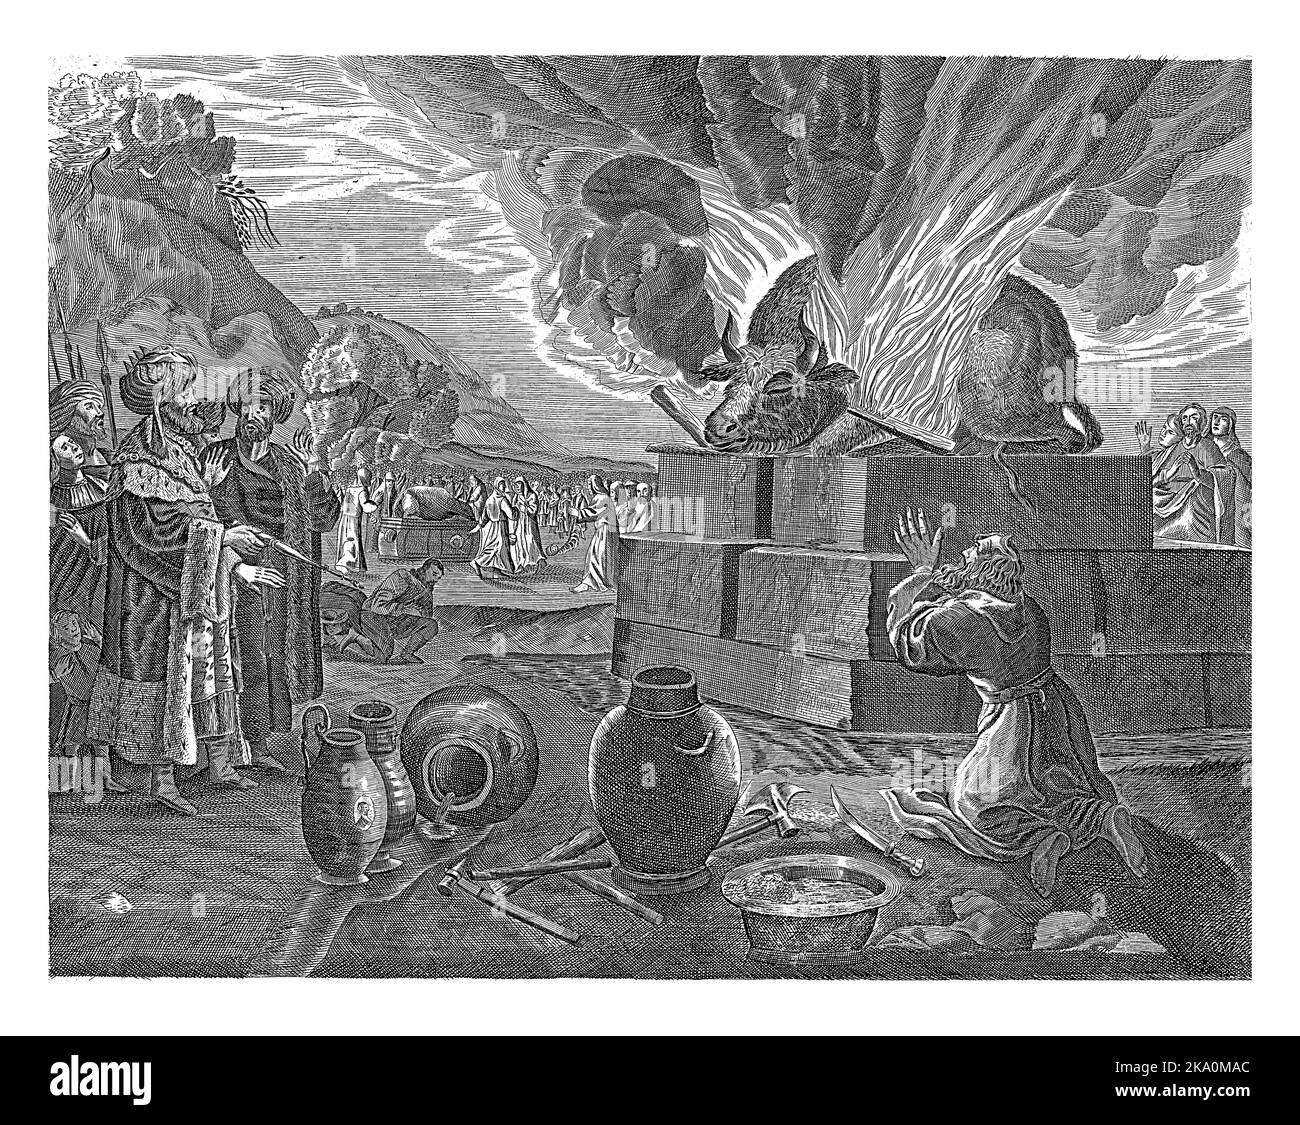 Le prophète Élie s'agenouille devant l'autel qu'il a soulevé d'eau et appelle son Dieu à brûler le sacrifice. Le roi Achab regarde sur la gauche. Banque D'Images